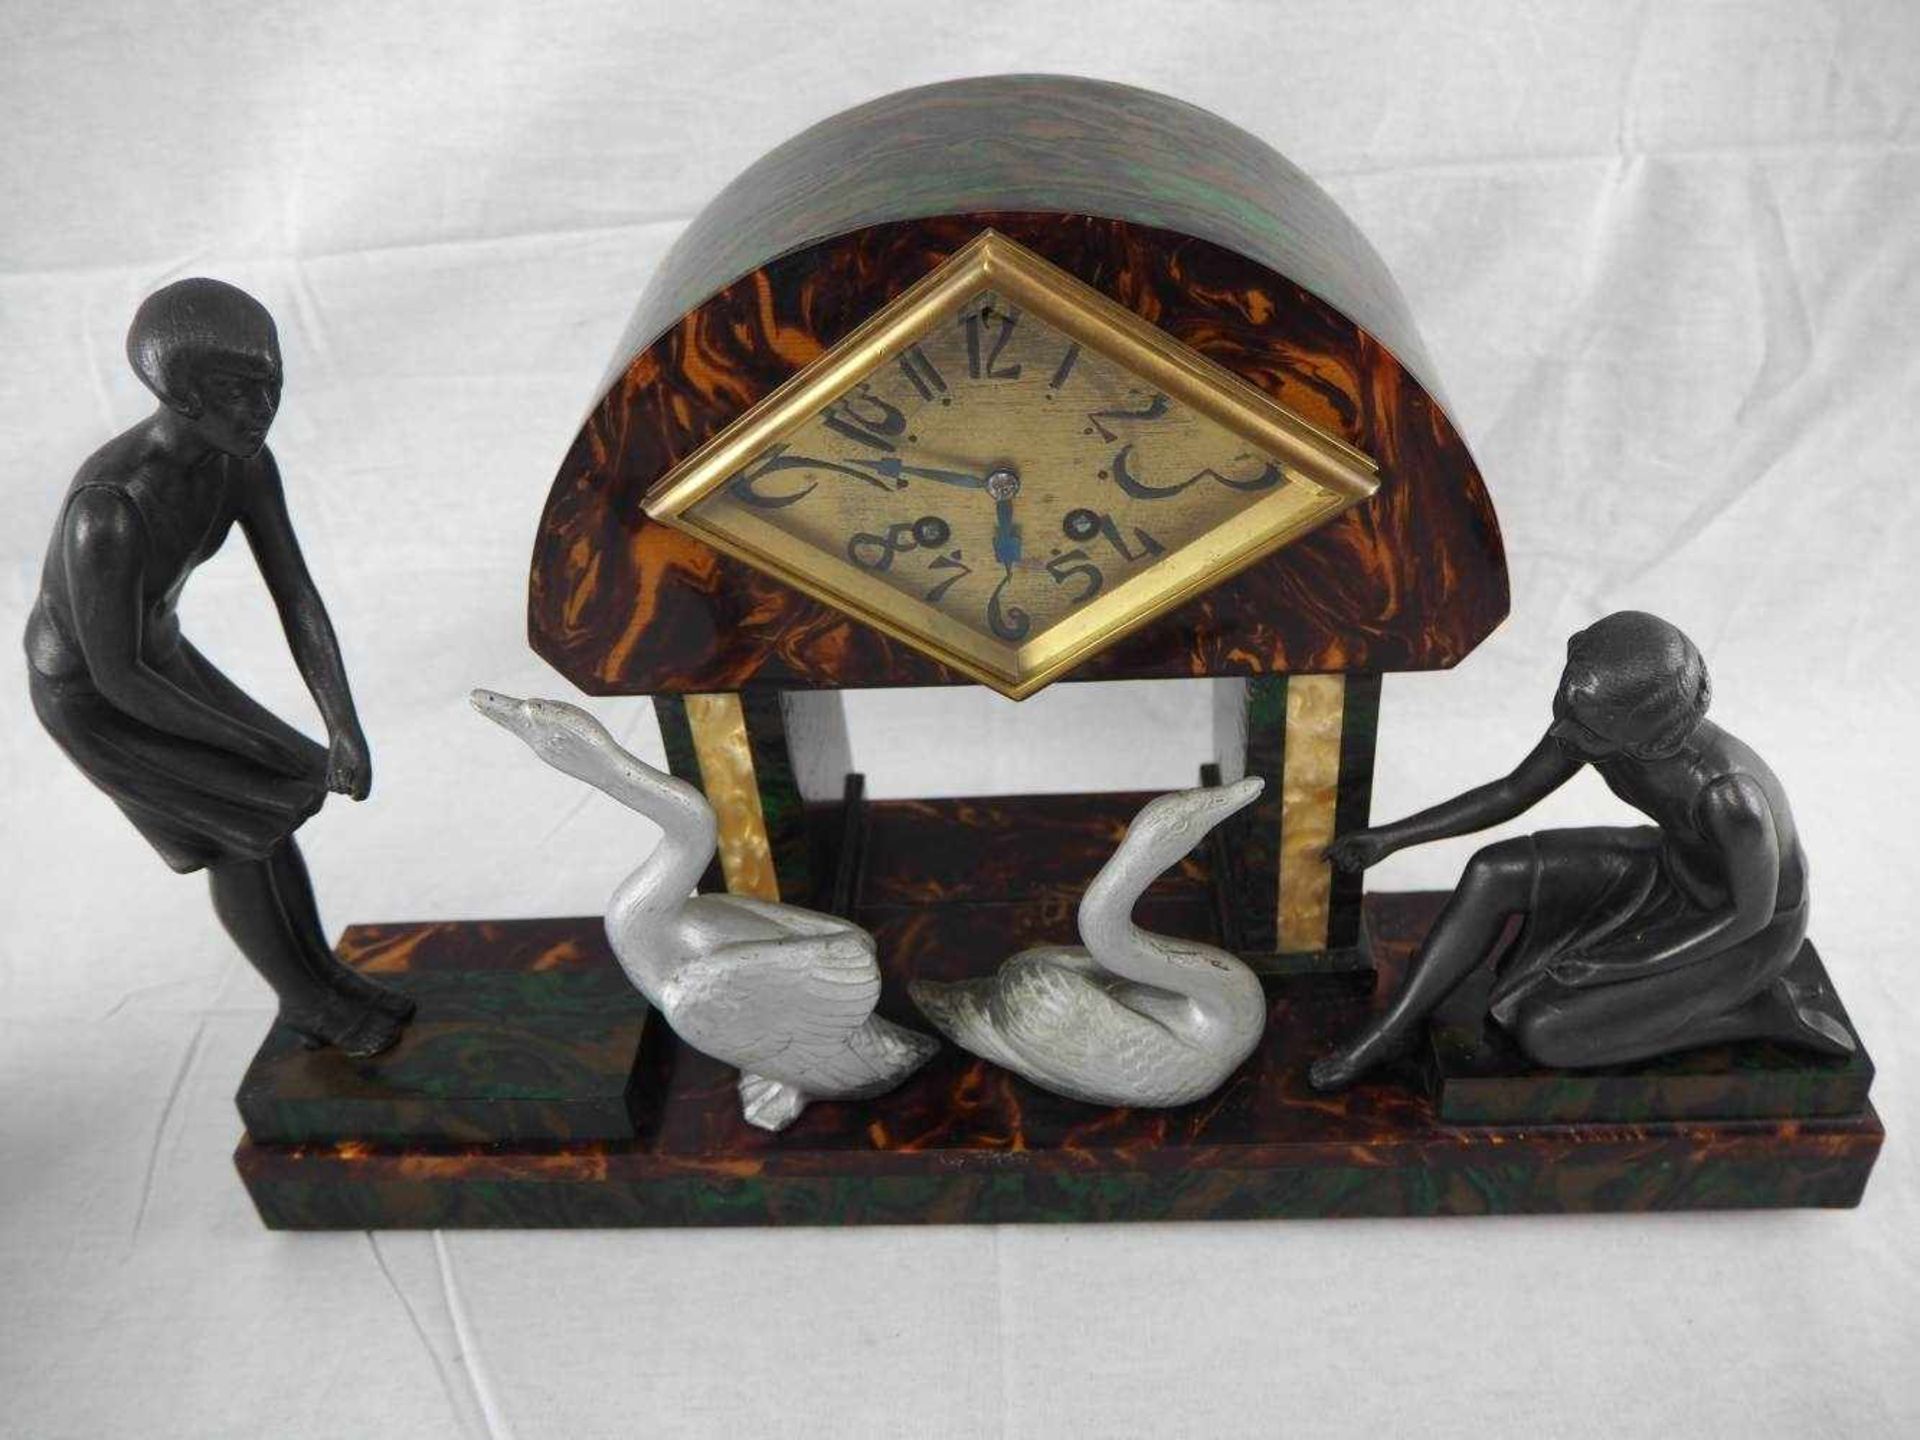 Französische Art Deco Pendule um 1920mit Beistellern, Halb- und Stundenschlag auf Glocke.Gehäuse - Bild 2 aus 5